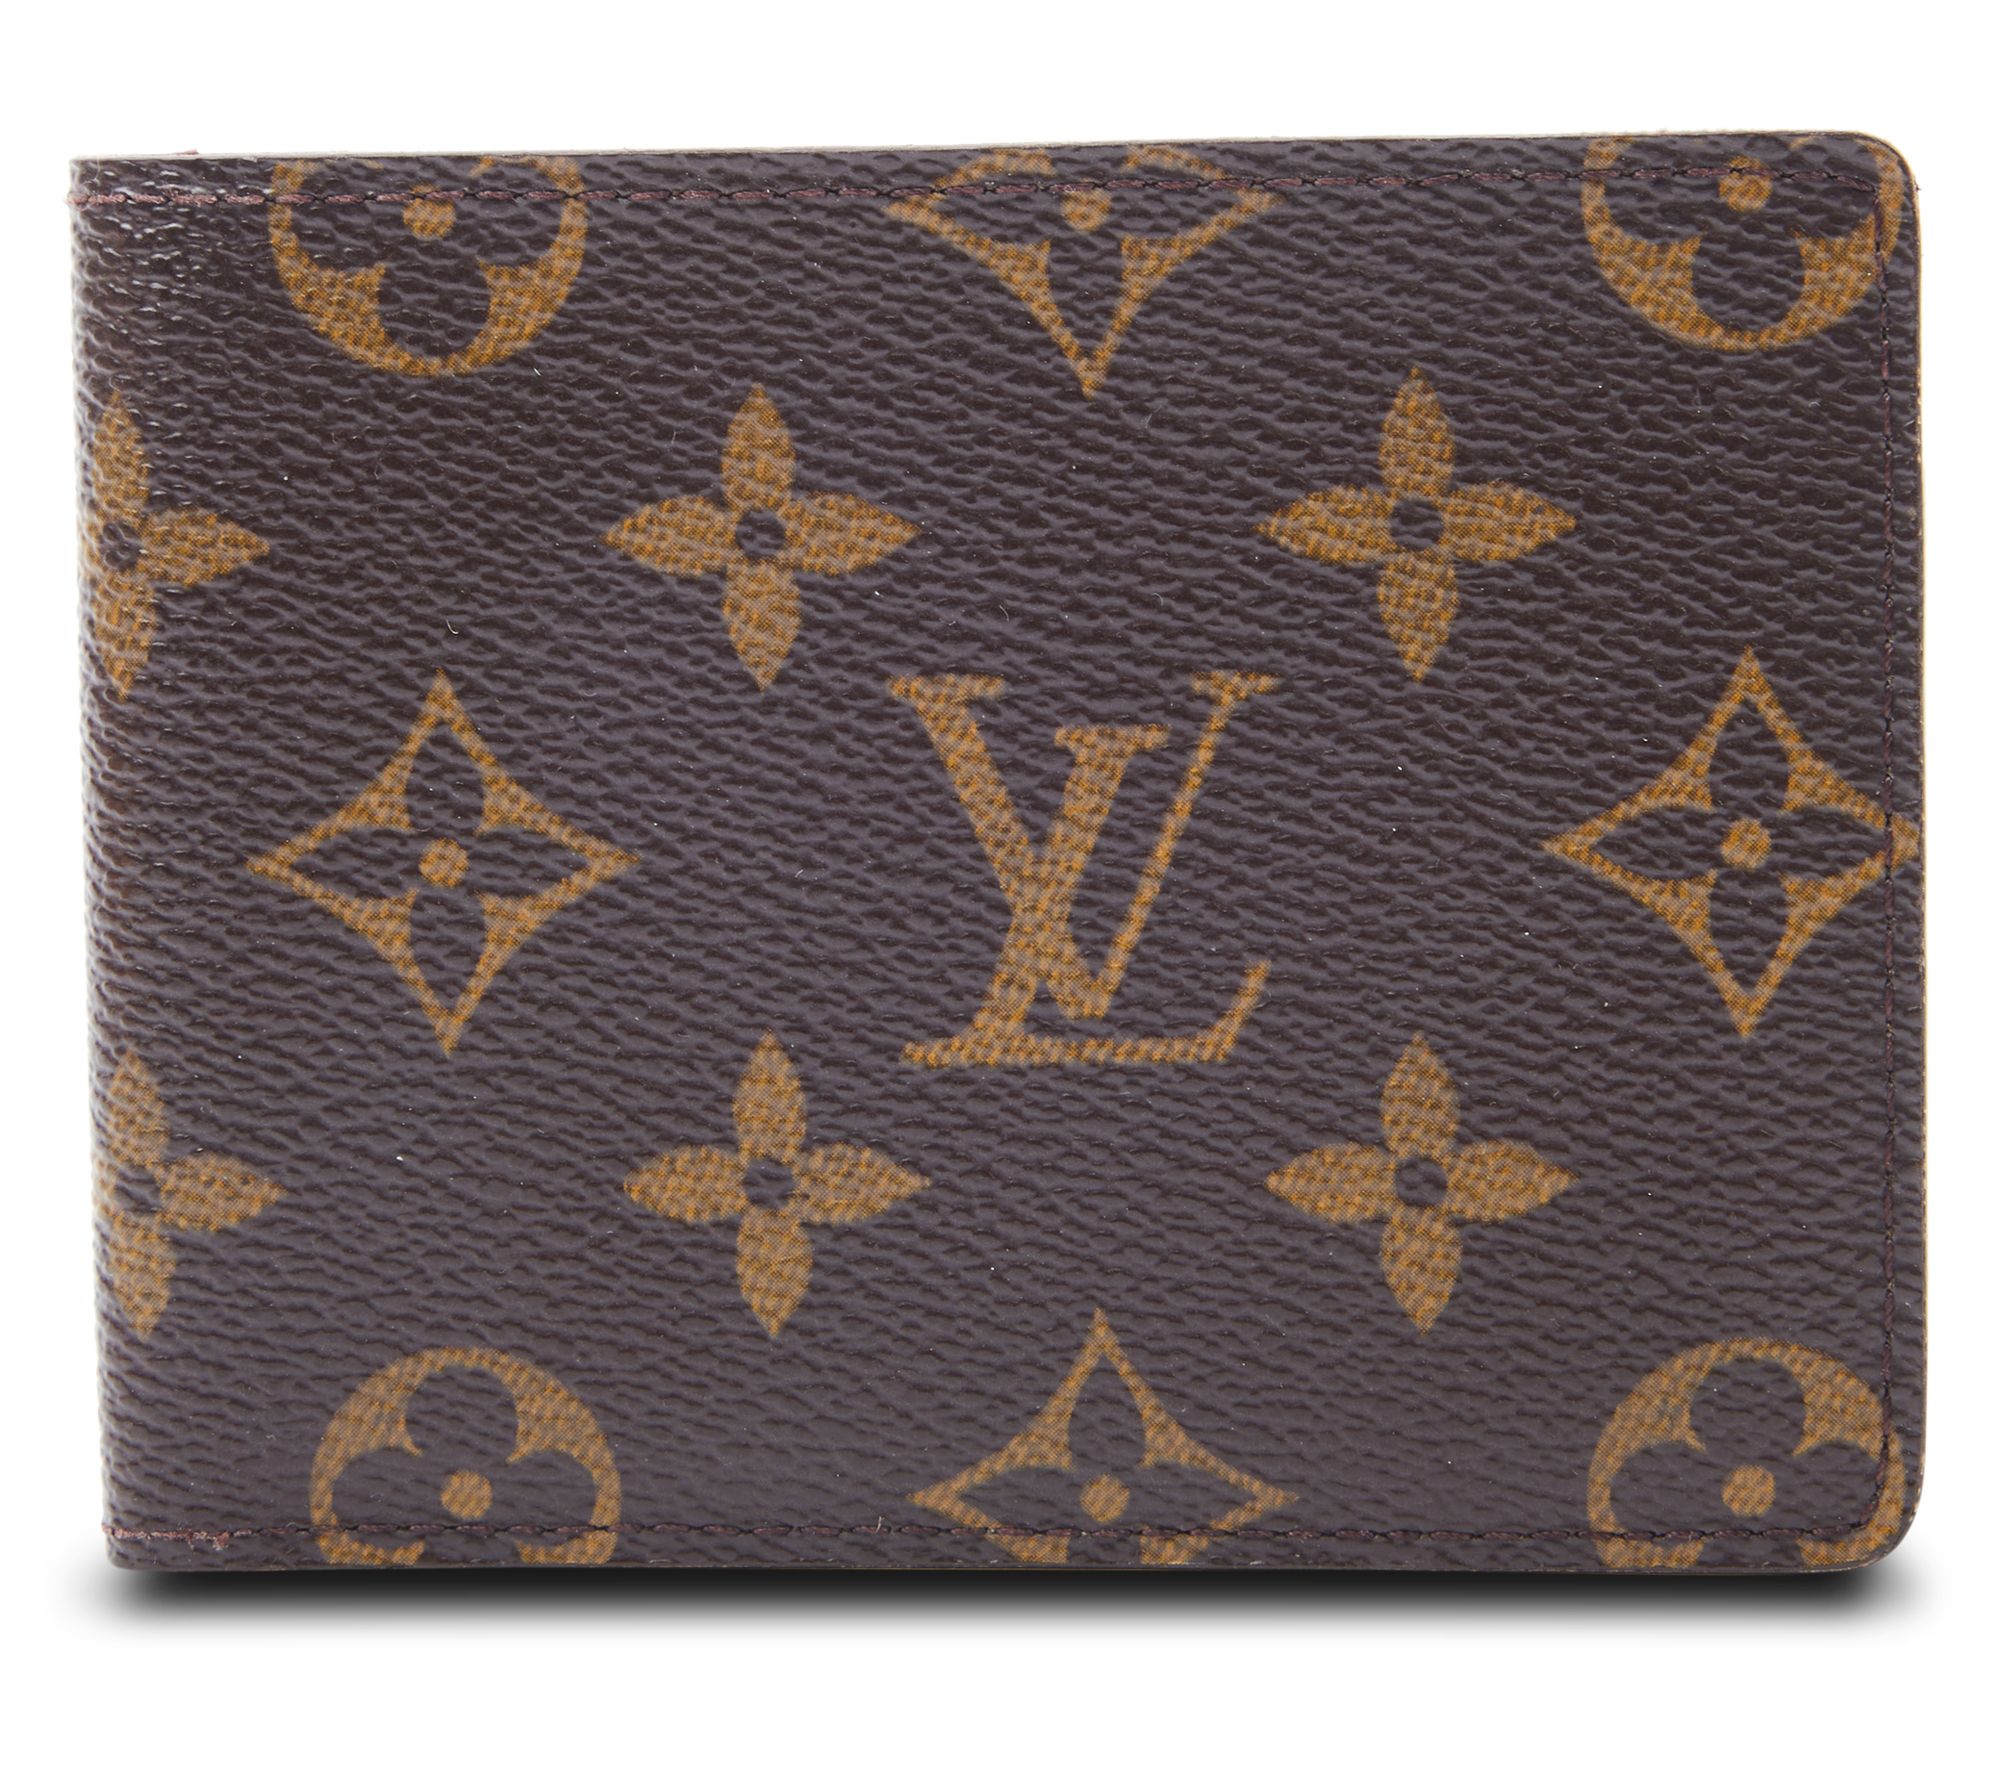 Pre-Owned Louis Vuitton Slim Wallet Monogram Brown 